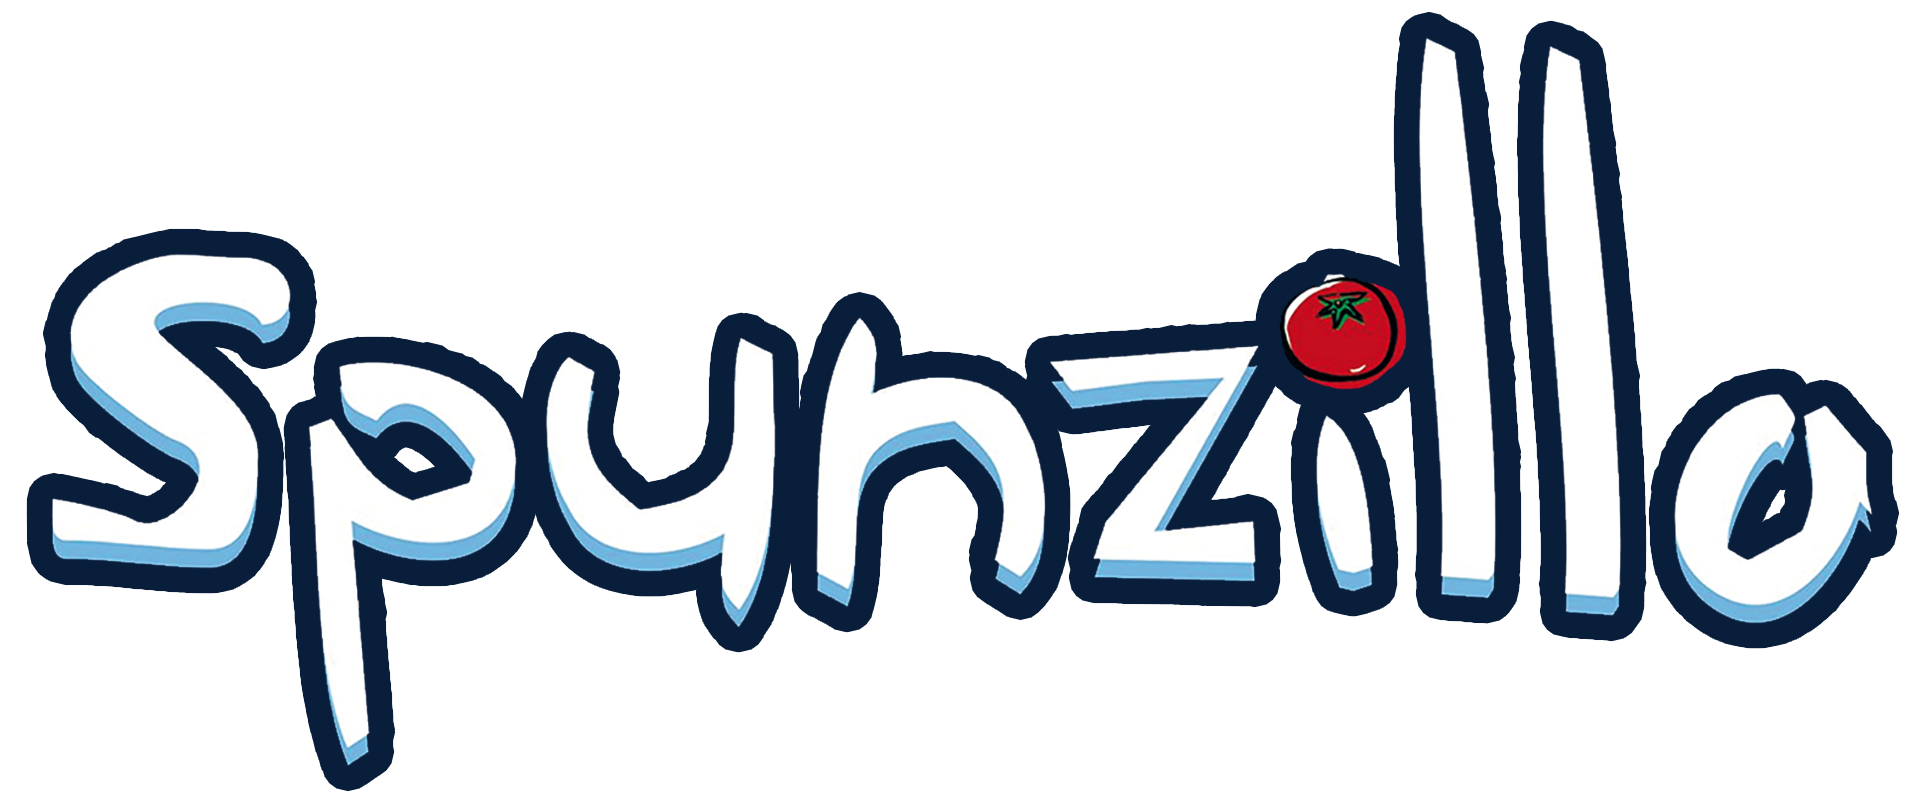 Spunzillo Pizzeria Ristorante Salerno - Logo Web